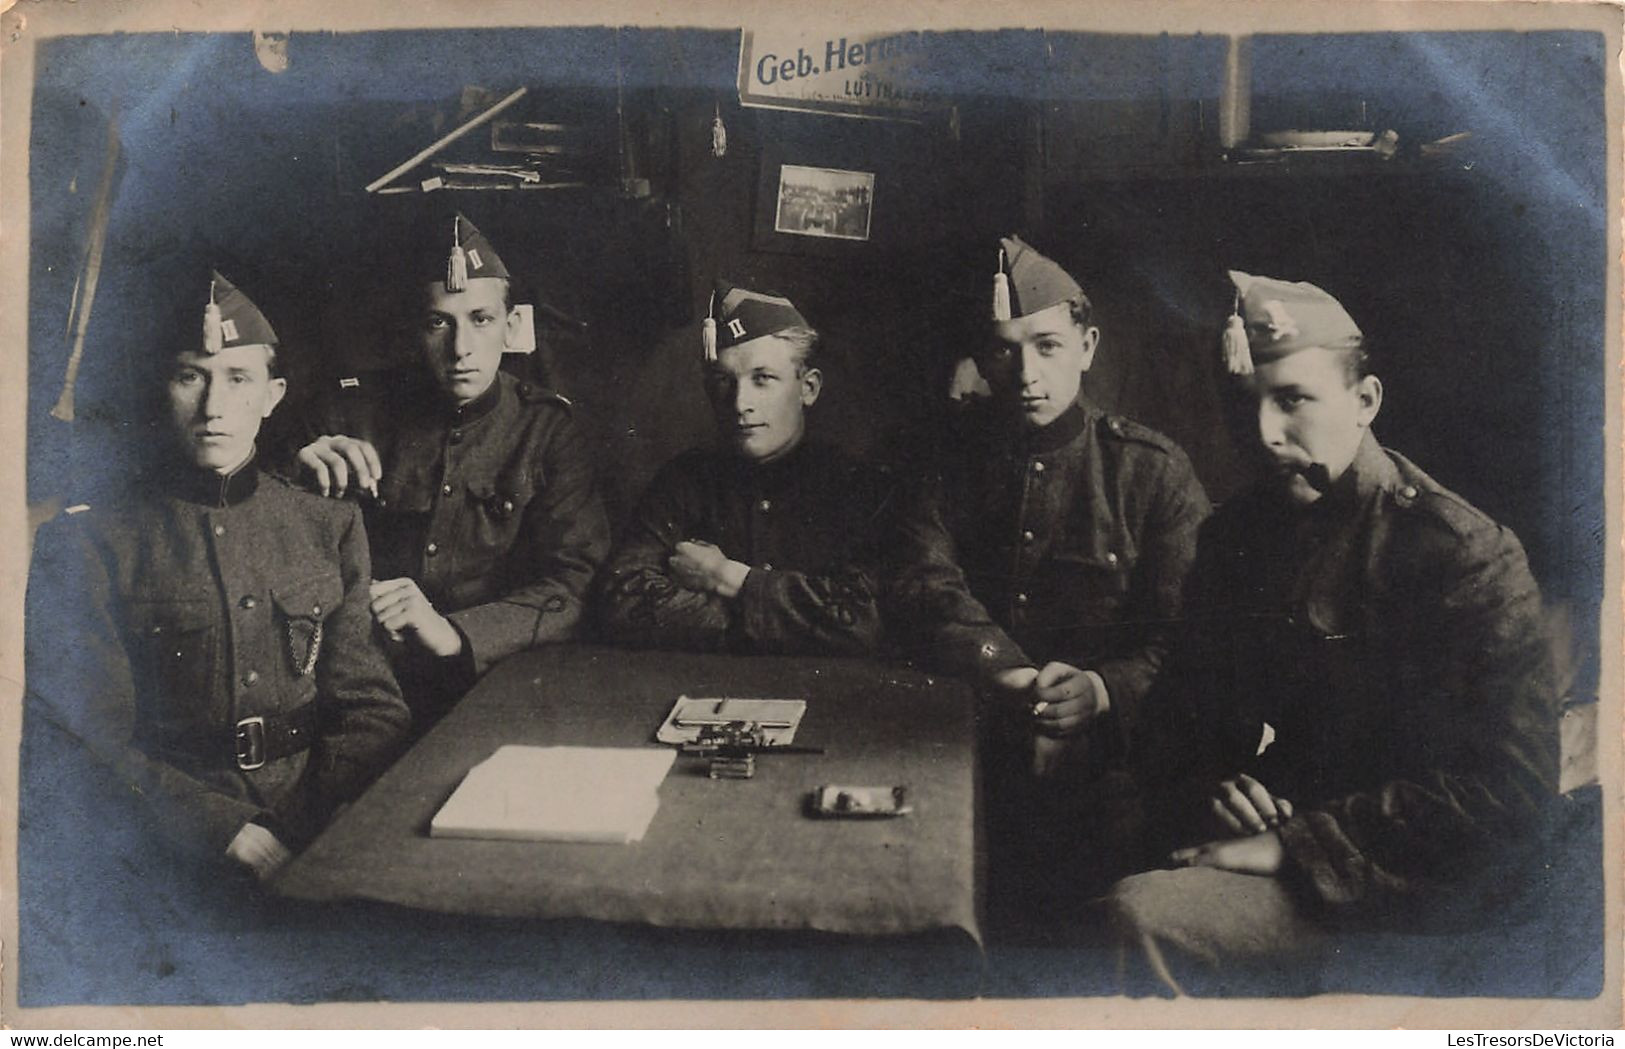 CPA - Militaria - Carte Photo  - Groupe Soldats Assis Autour D'une Table - Cigarette - Beret - Characters